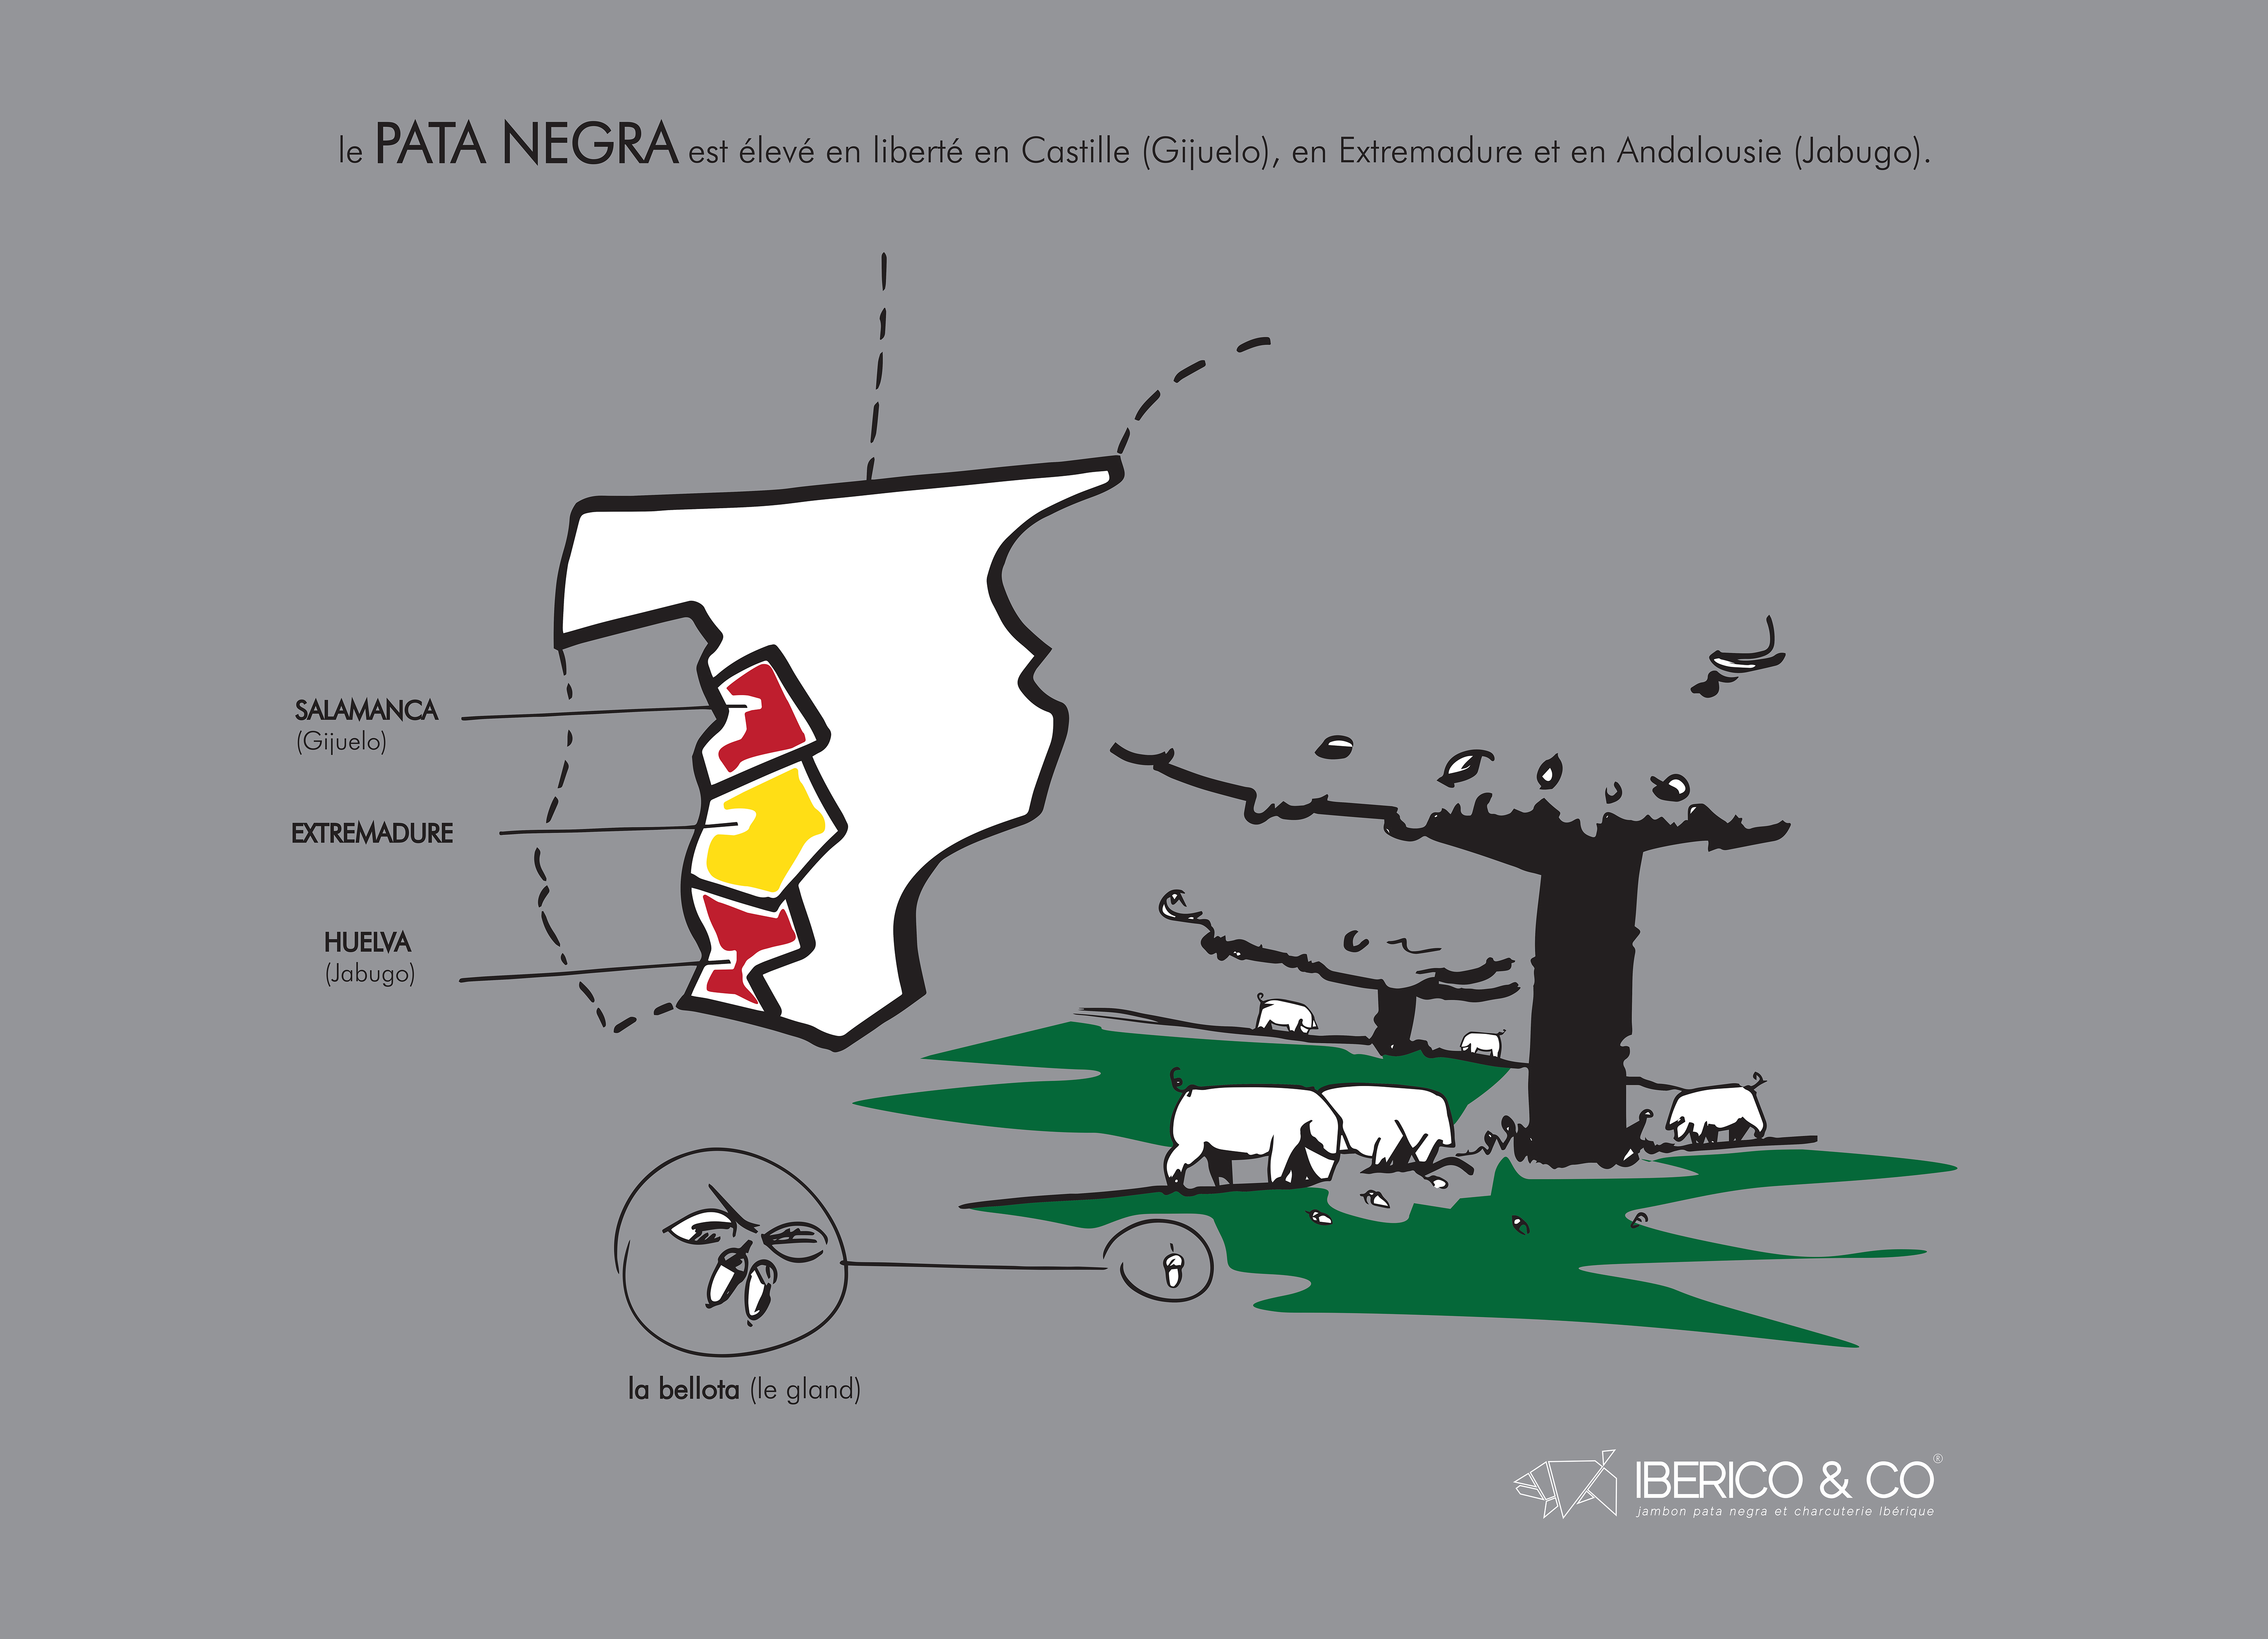 1- BGC, Iberico & Co, illustration cochon et carte Espagne, logo